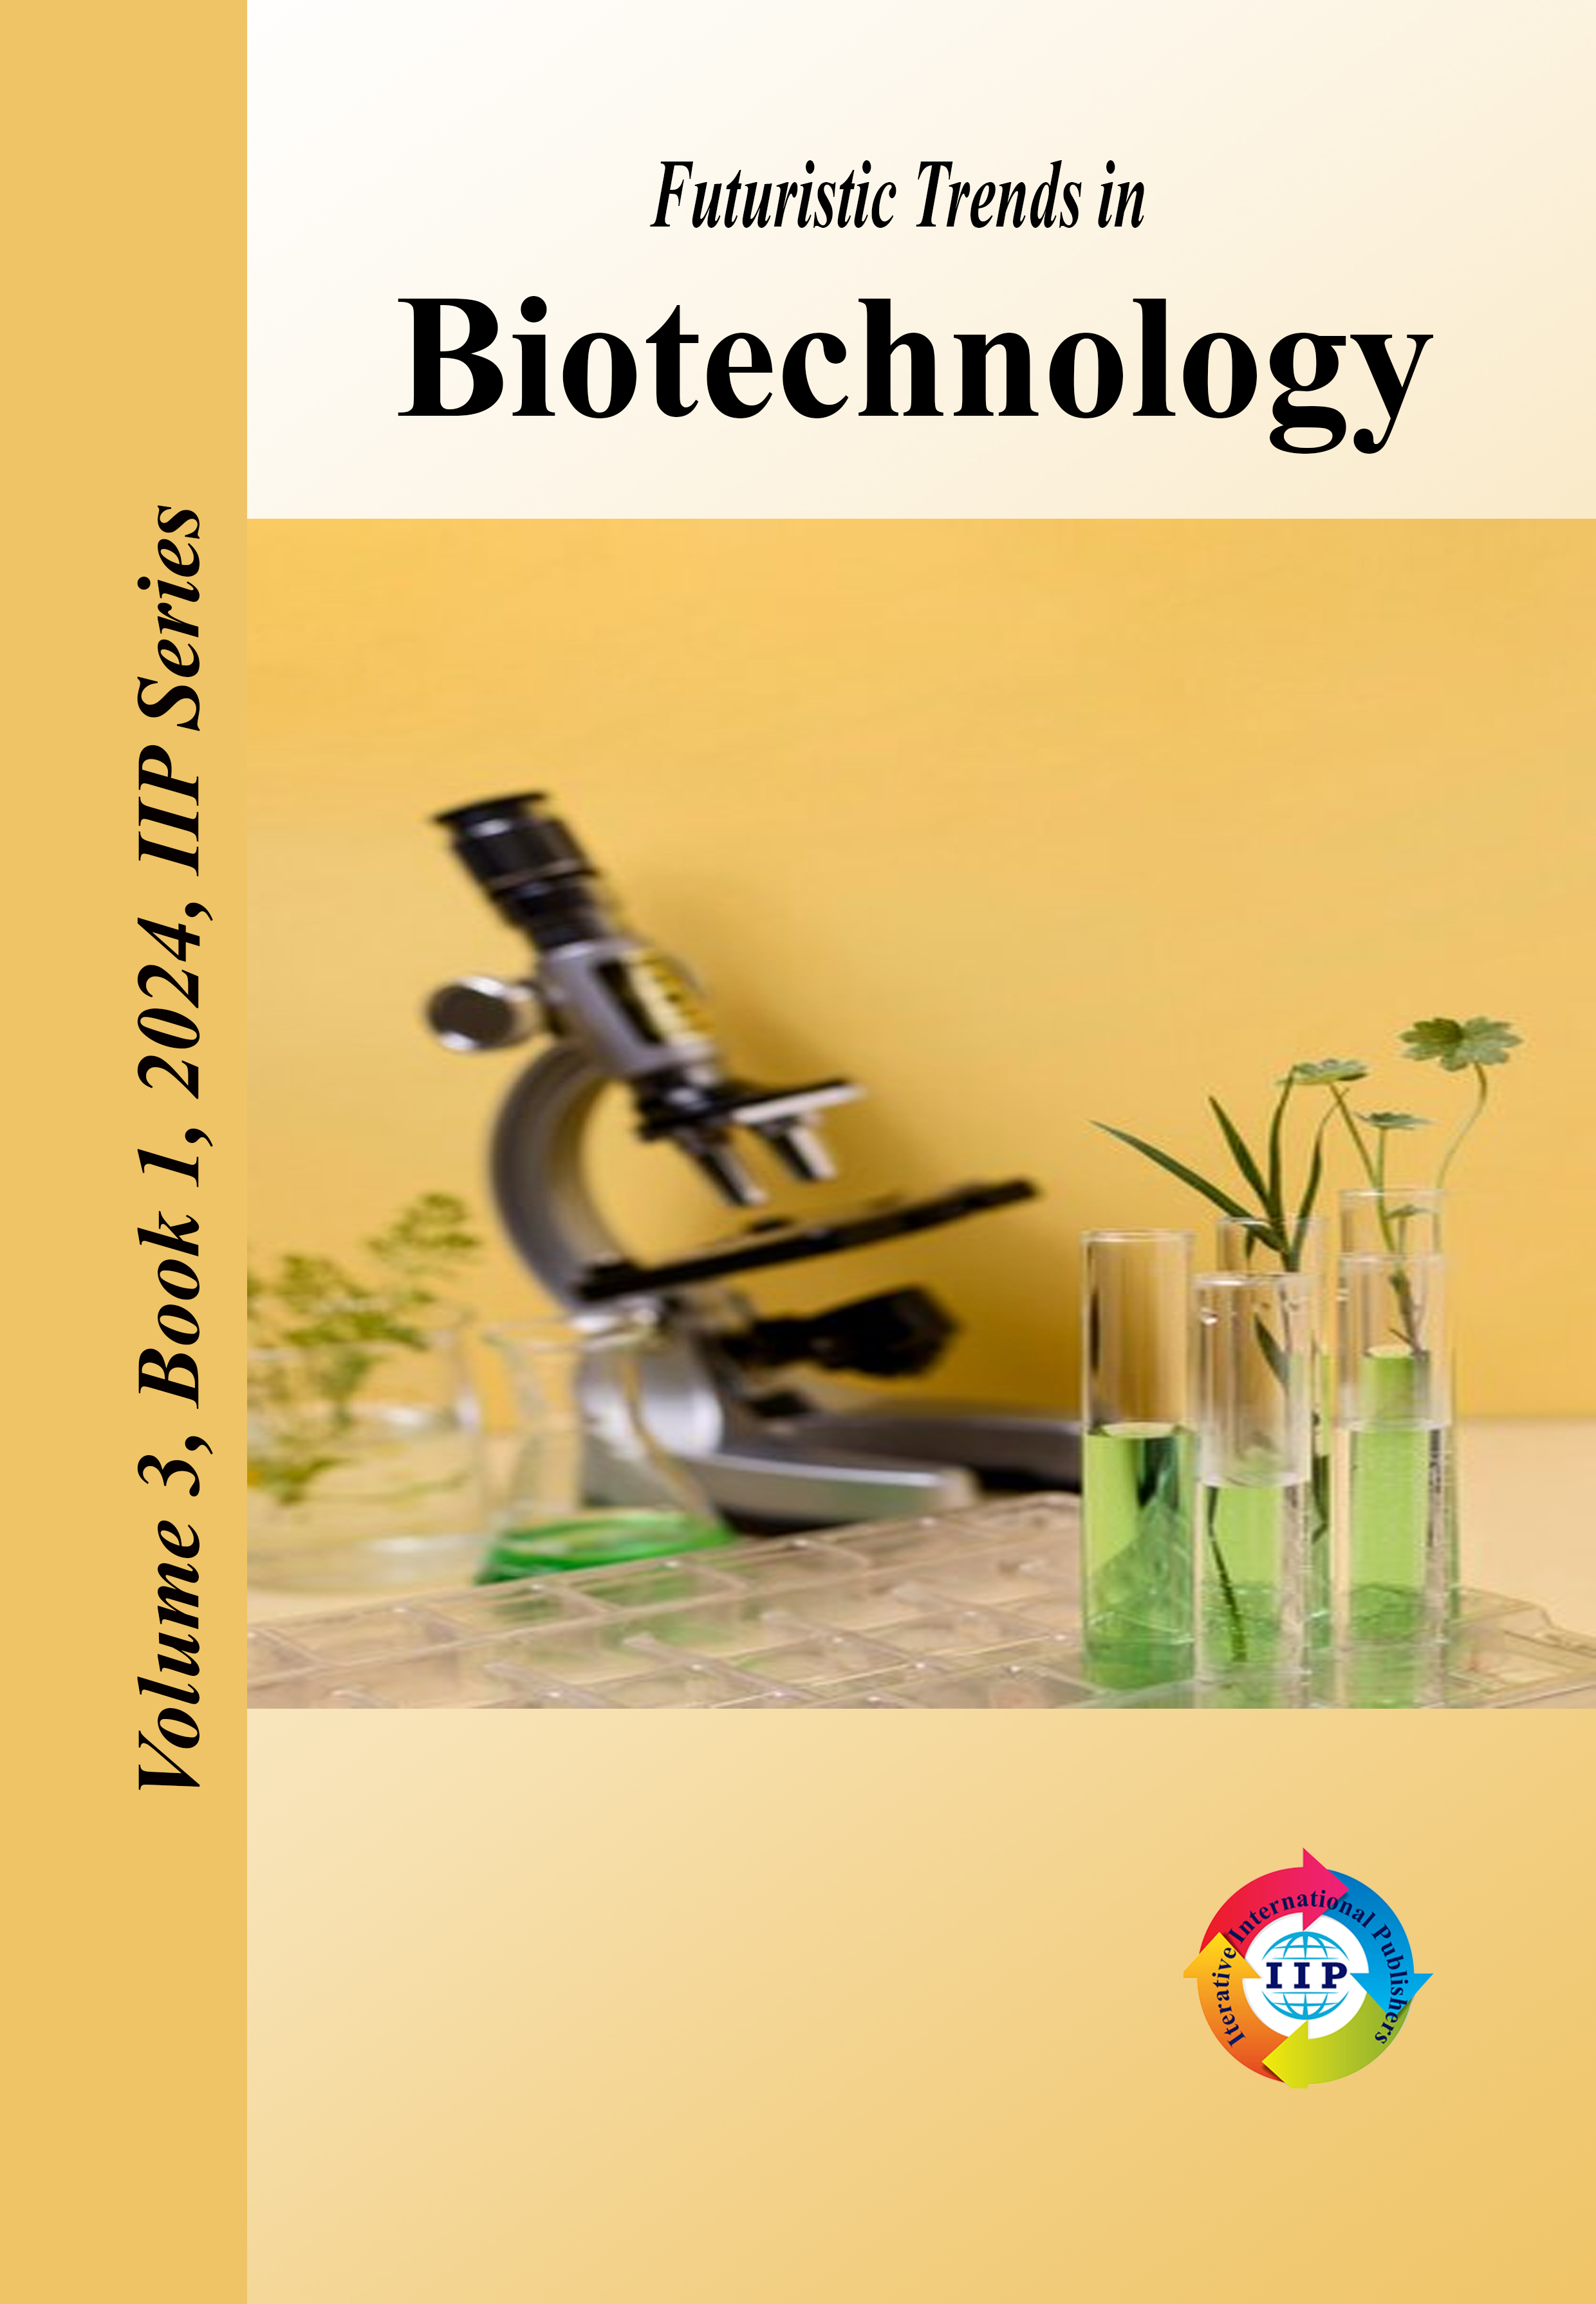 Futuristic Trends in Biotechnology Volume 3 Book 1